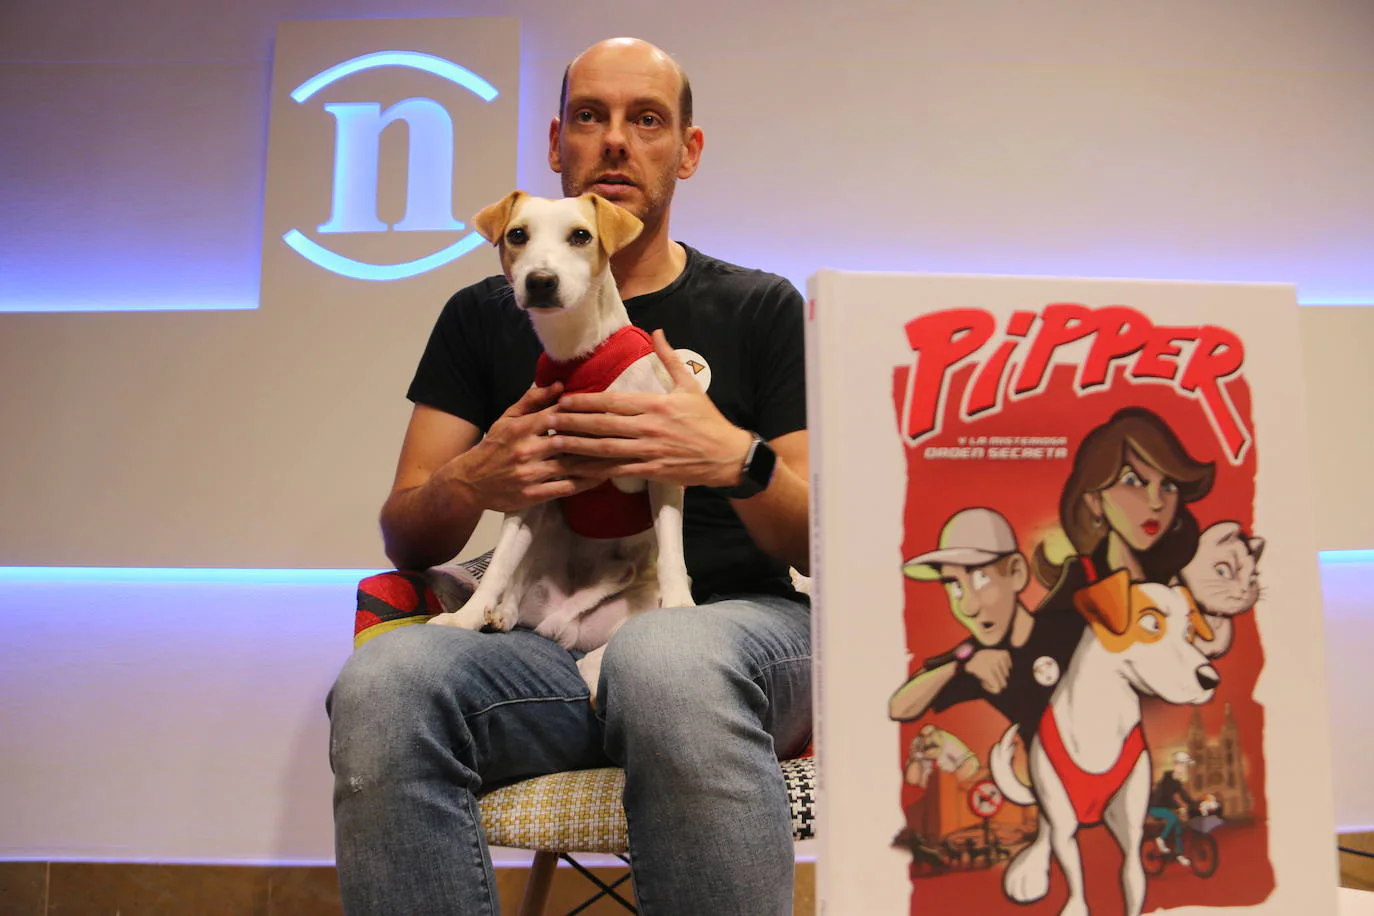 El perro aventurero más famoso de España ha acudido a la redacción para presentar el nuevo comic en el que se convierte en protagonista de una historia.